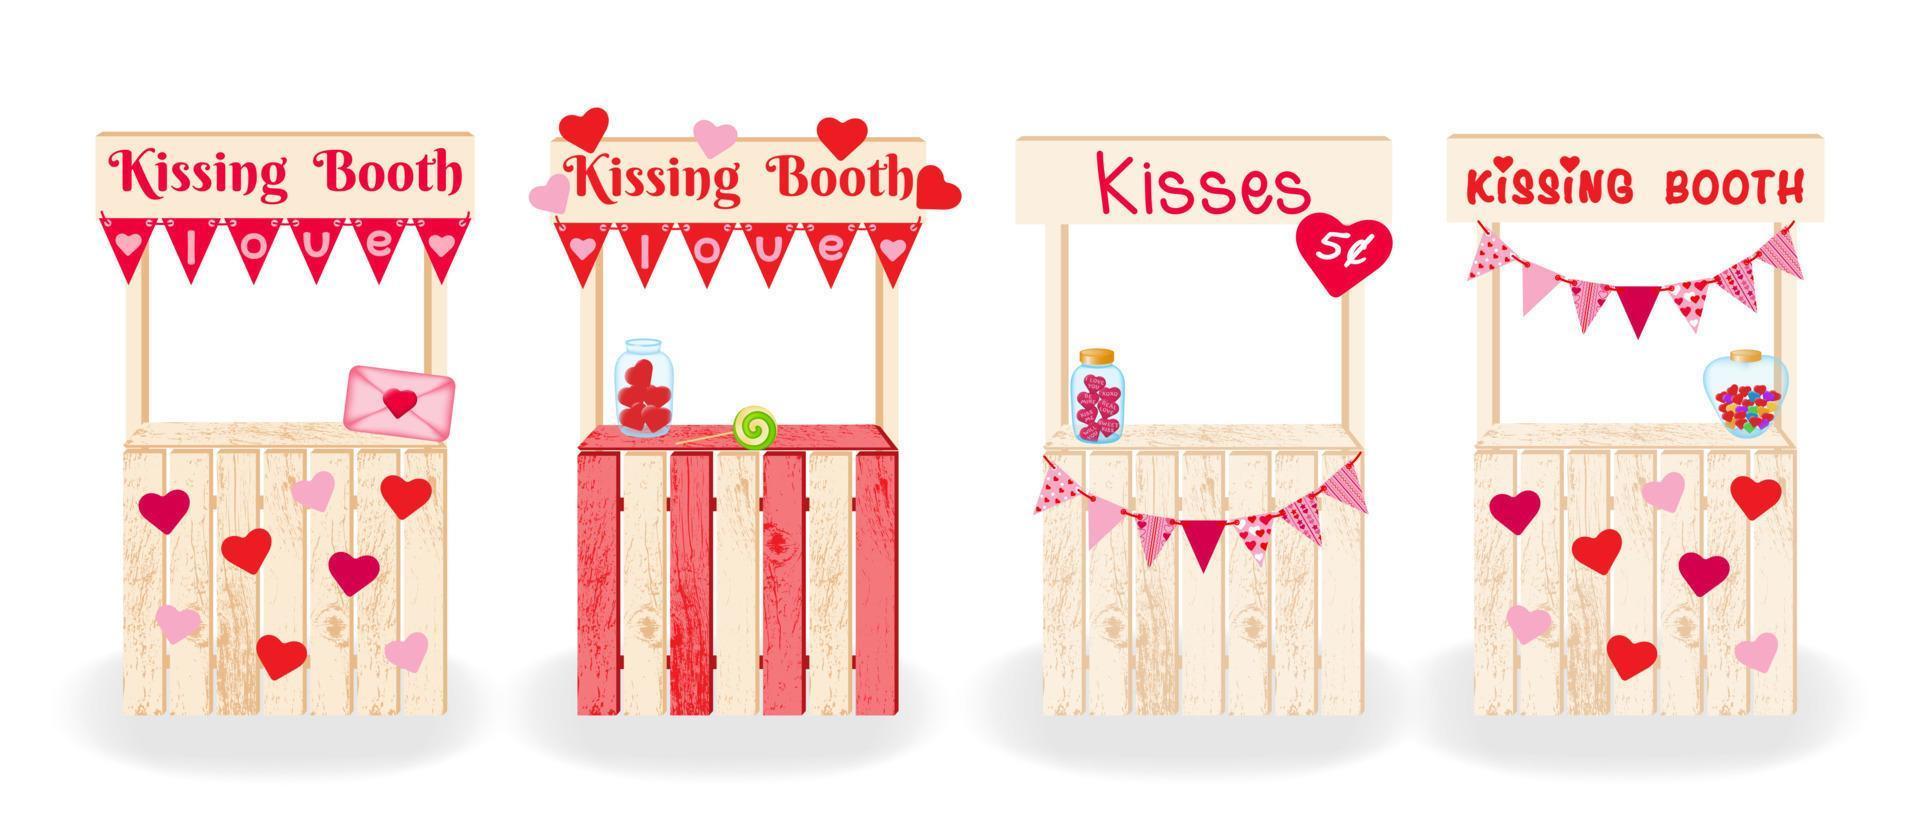 kissing bås. fyra dekorativ dekorerad kissing bås. uppsättning av trä- dekorationer för fira födelsedag, bröllop, Lycklig hjärtans dag. vektor illustration.